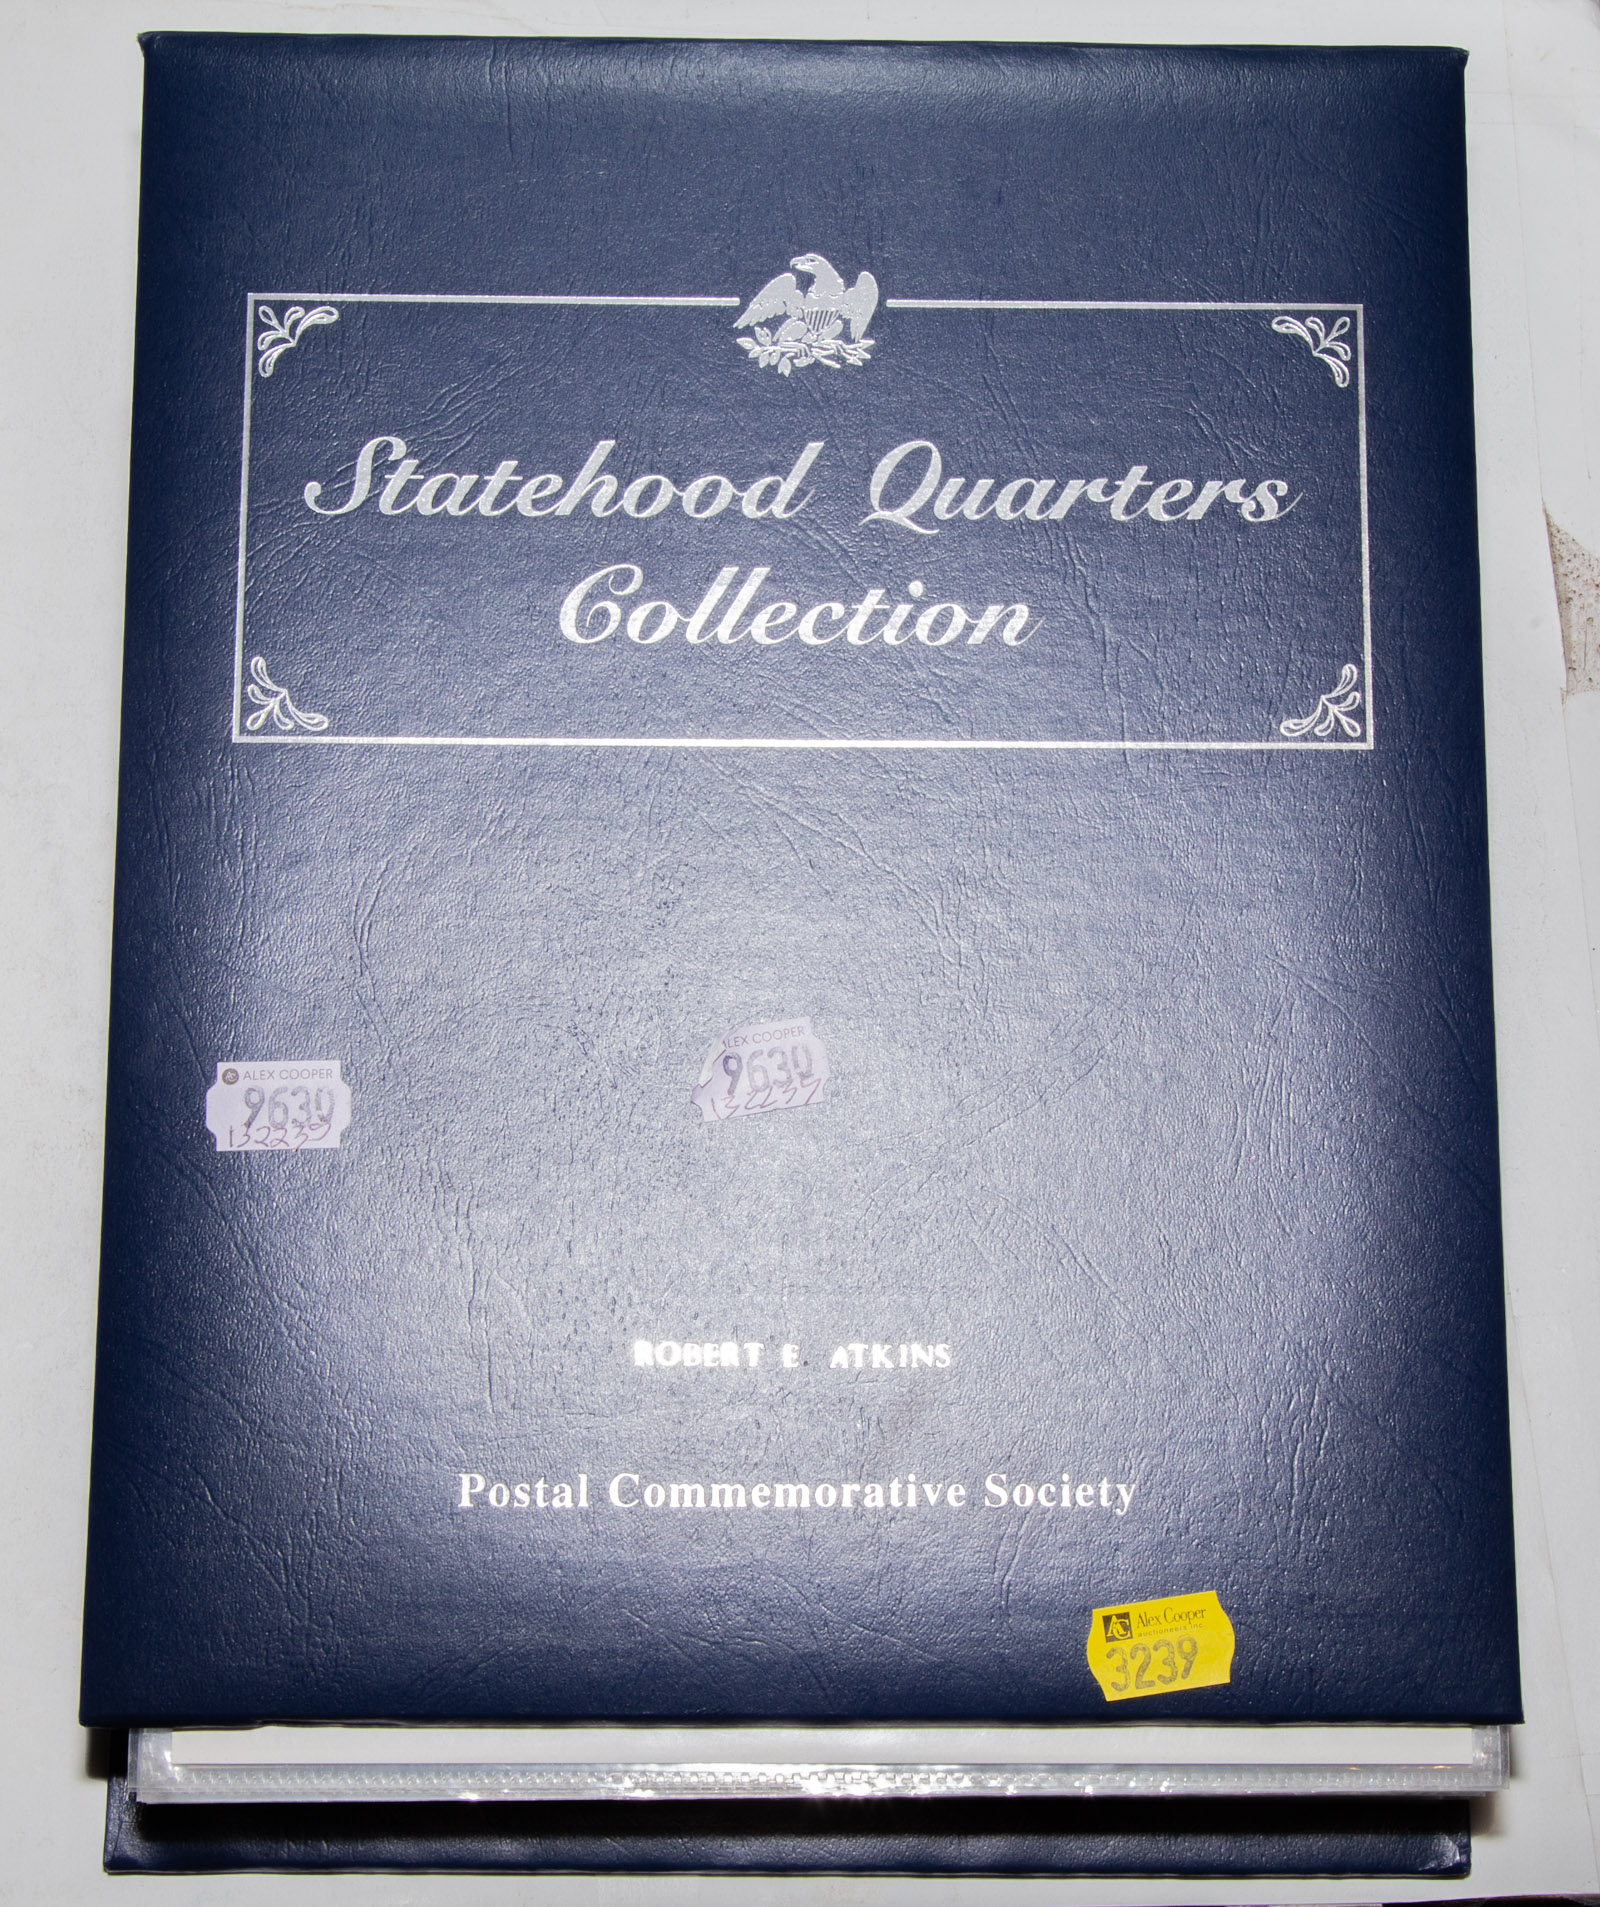 STATEHOOD QUARTERS COLLECTION PCS 335557